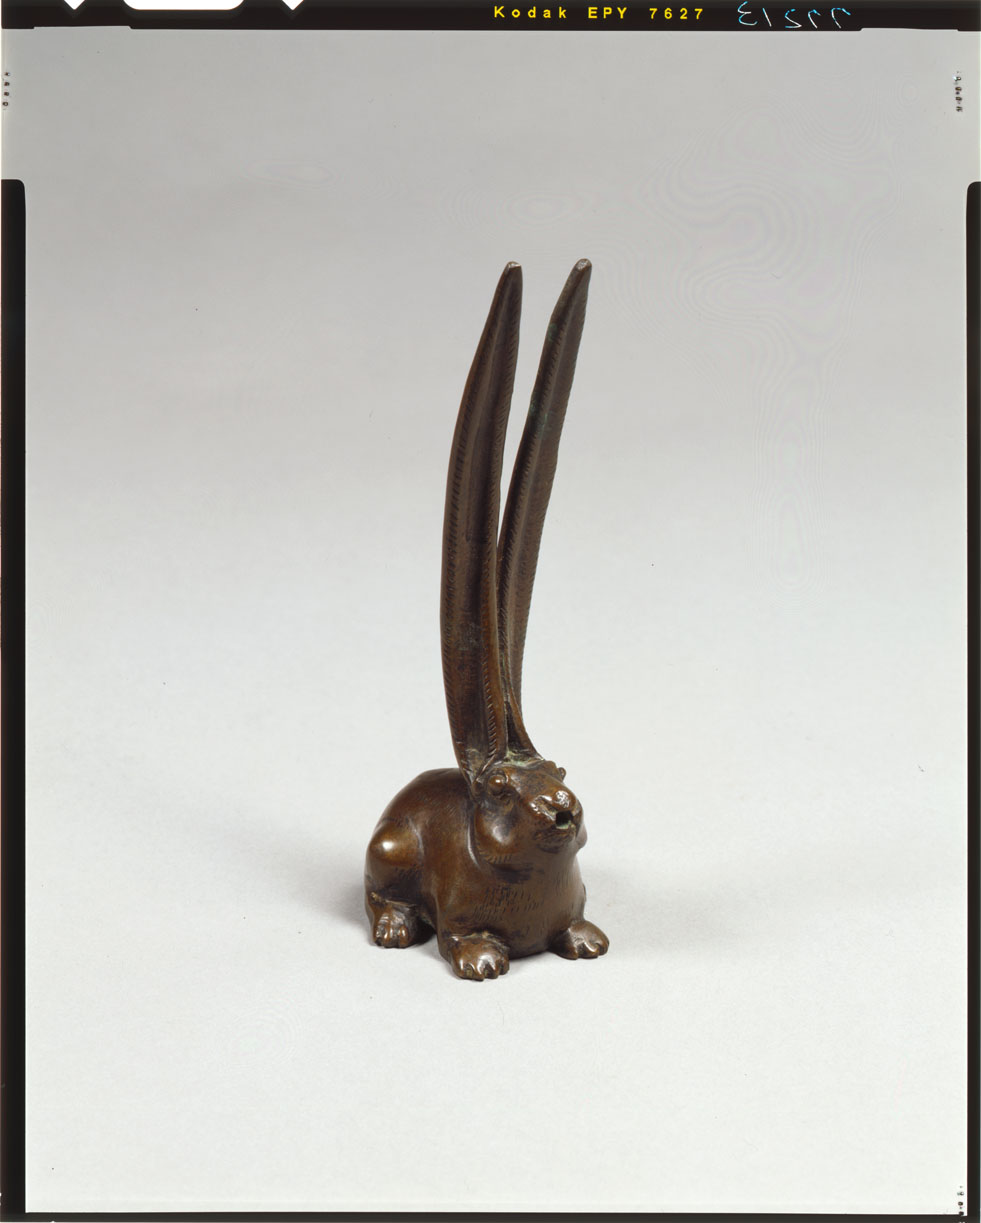 C0077213 銅兎水滴 - 東京国立博物館 画像検索